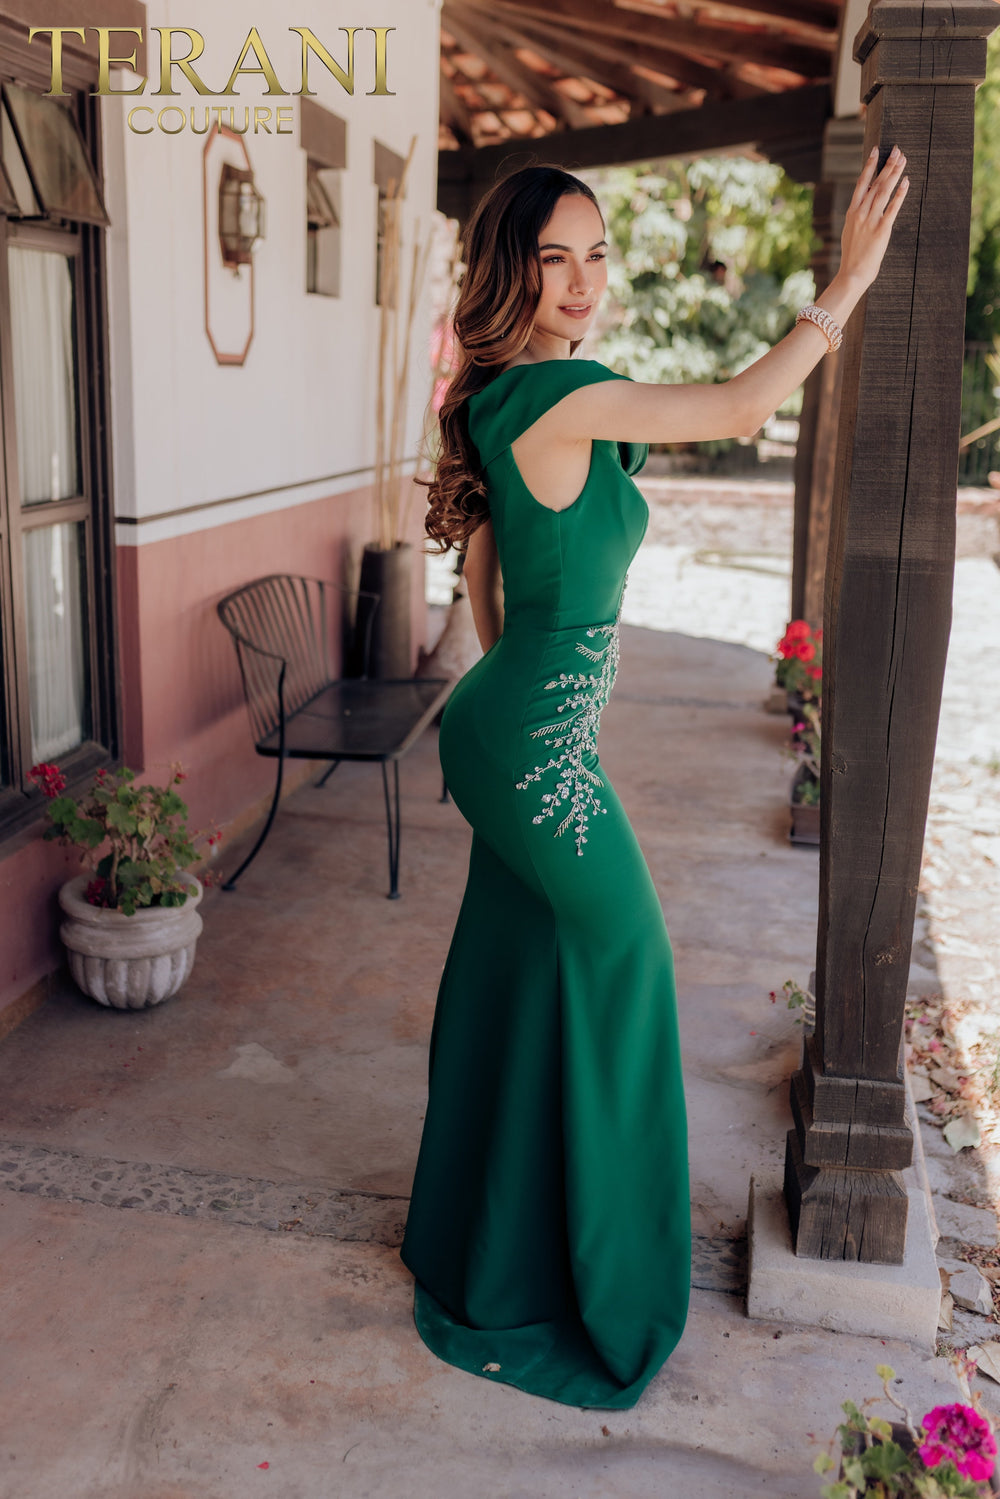 Terani Couture 232M1549 Emerald